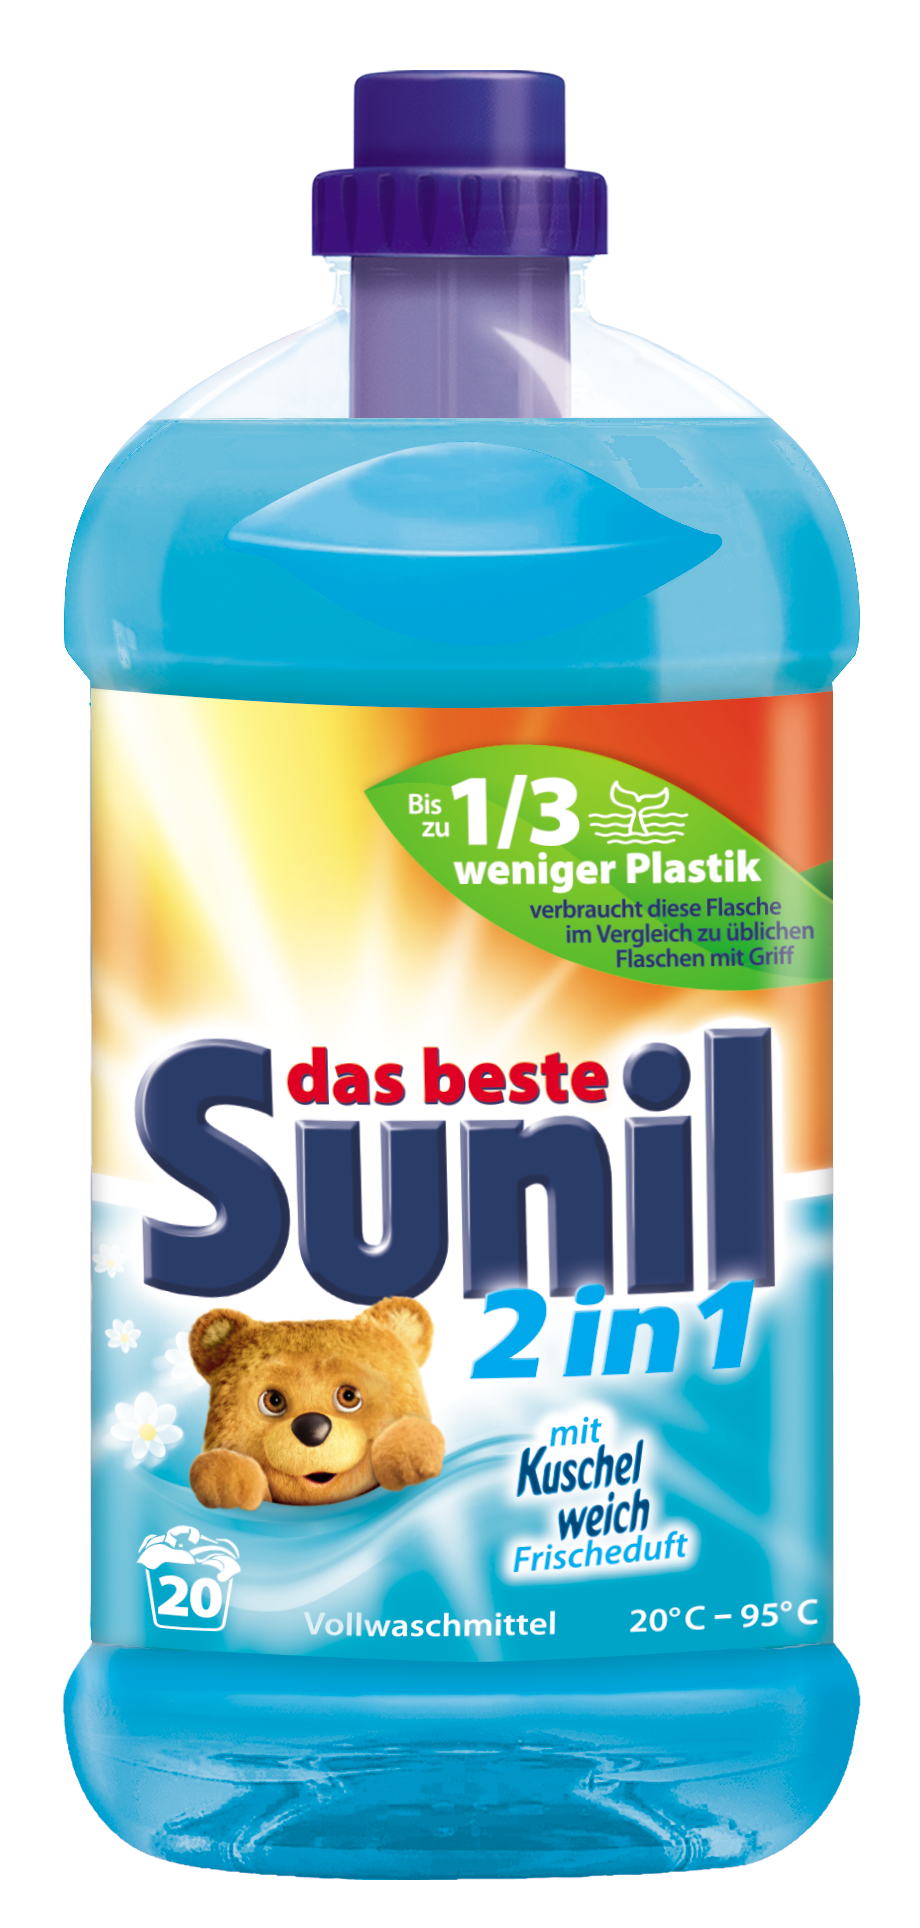 Sunil 2in1 Vollwaschmittel